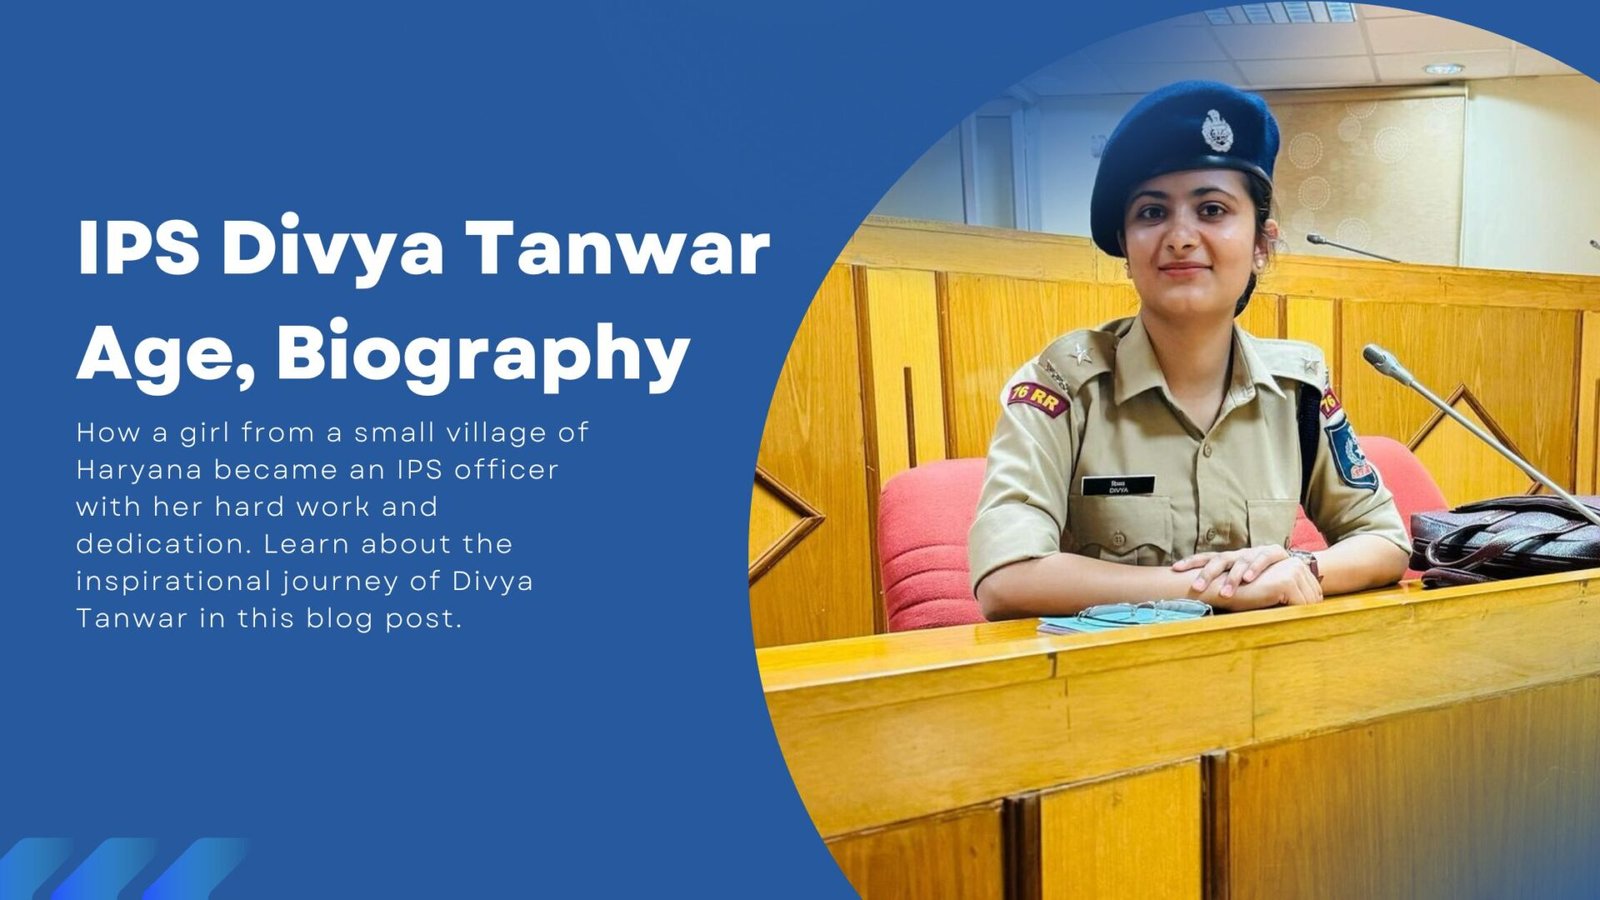 IPS Divya Tanwar Age, Biography